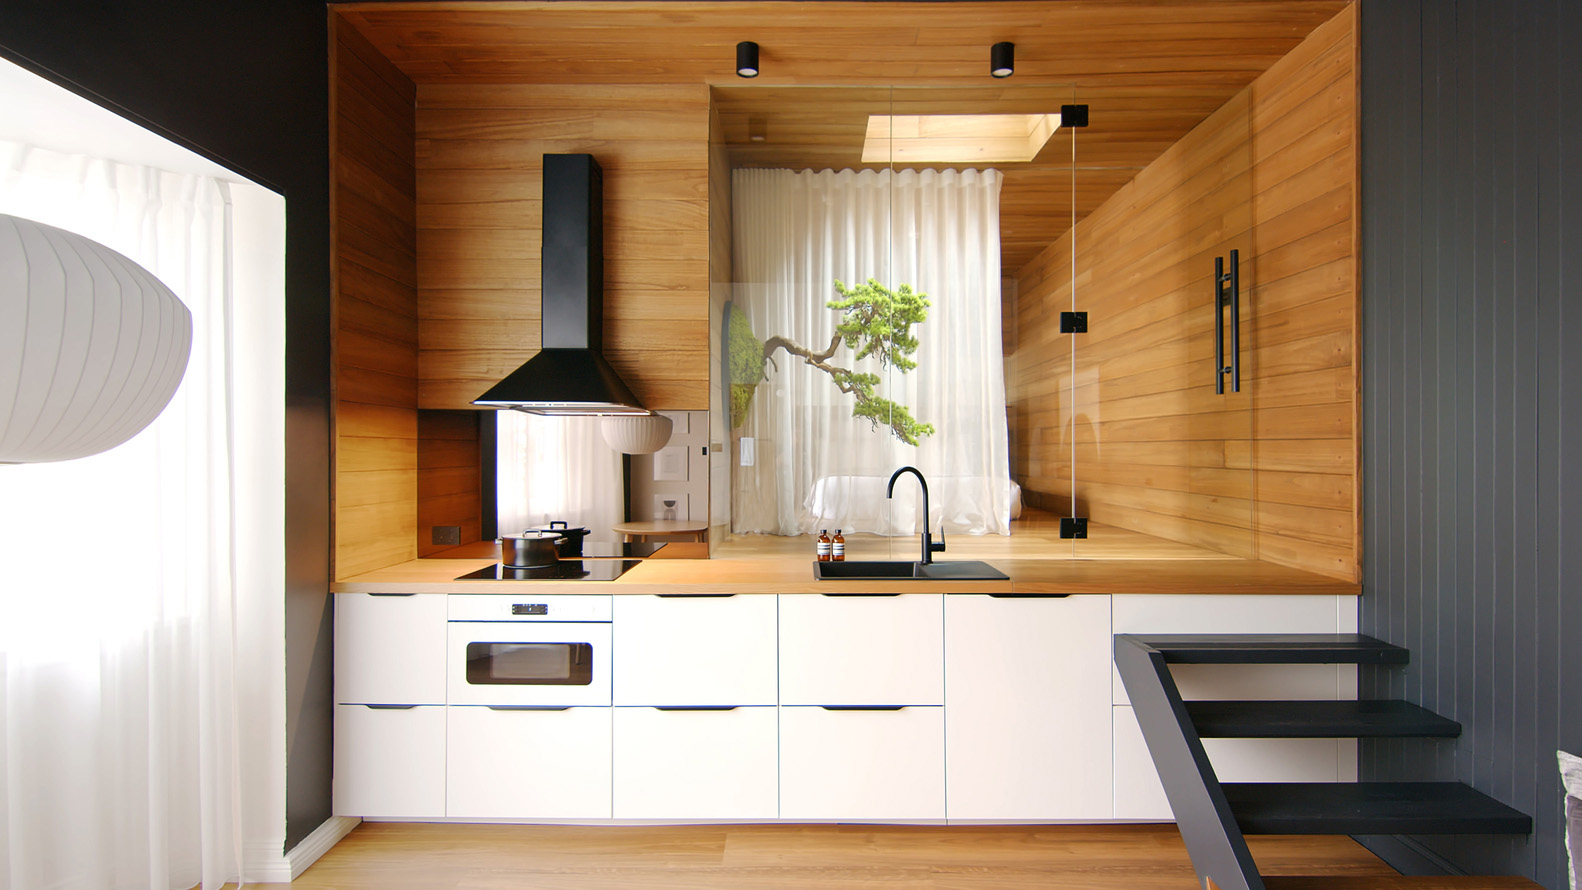 公寓設計,公寓設計案例,Dform Project,50㎡,澳大利亞·曼利,設計師的公寓,小公寓設計案例,公寓裝修,日式小旅館,度假公寓,原木色